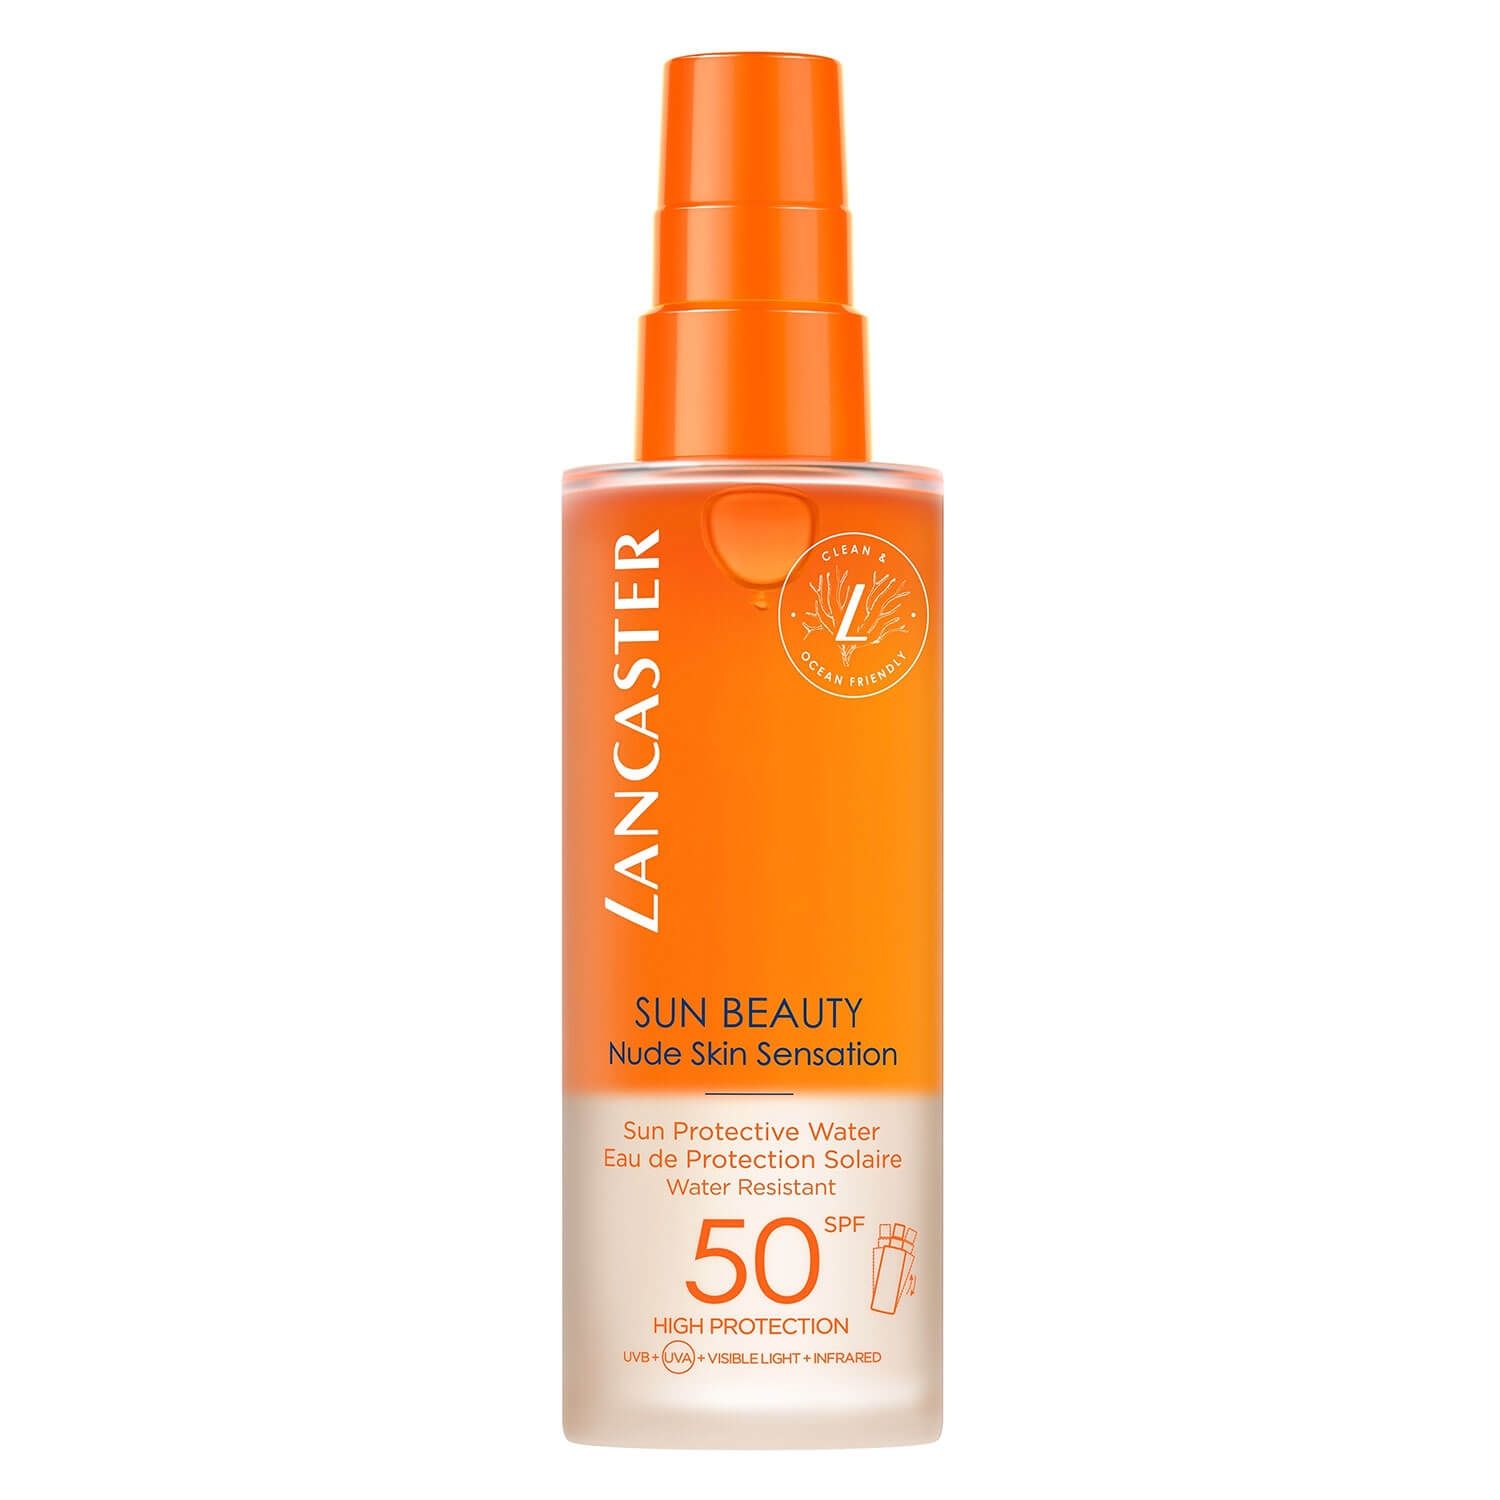 Produktbild von Sun Beauty - Nude Skin Sensation Sun Protection Water SPF50